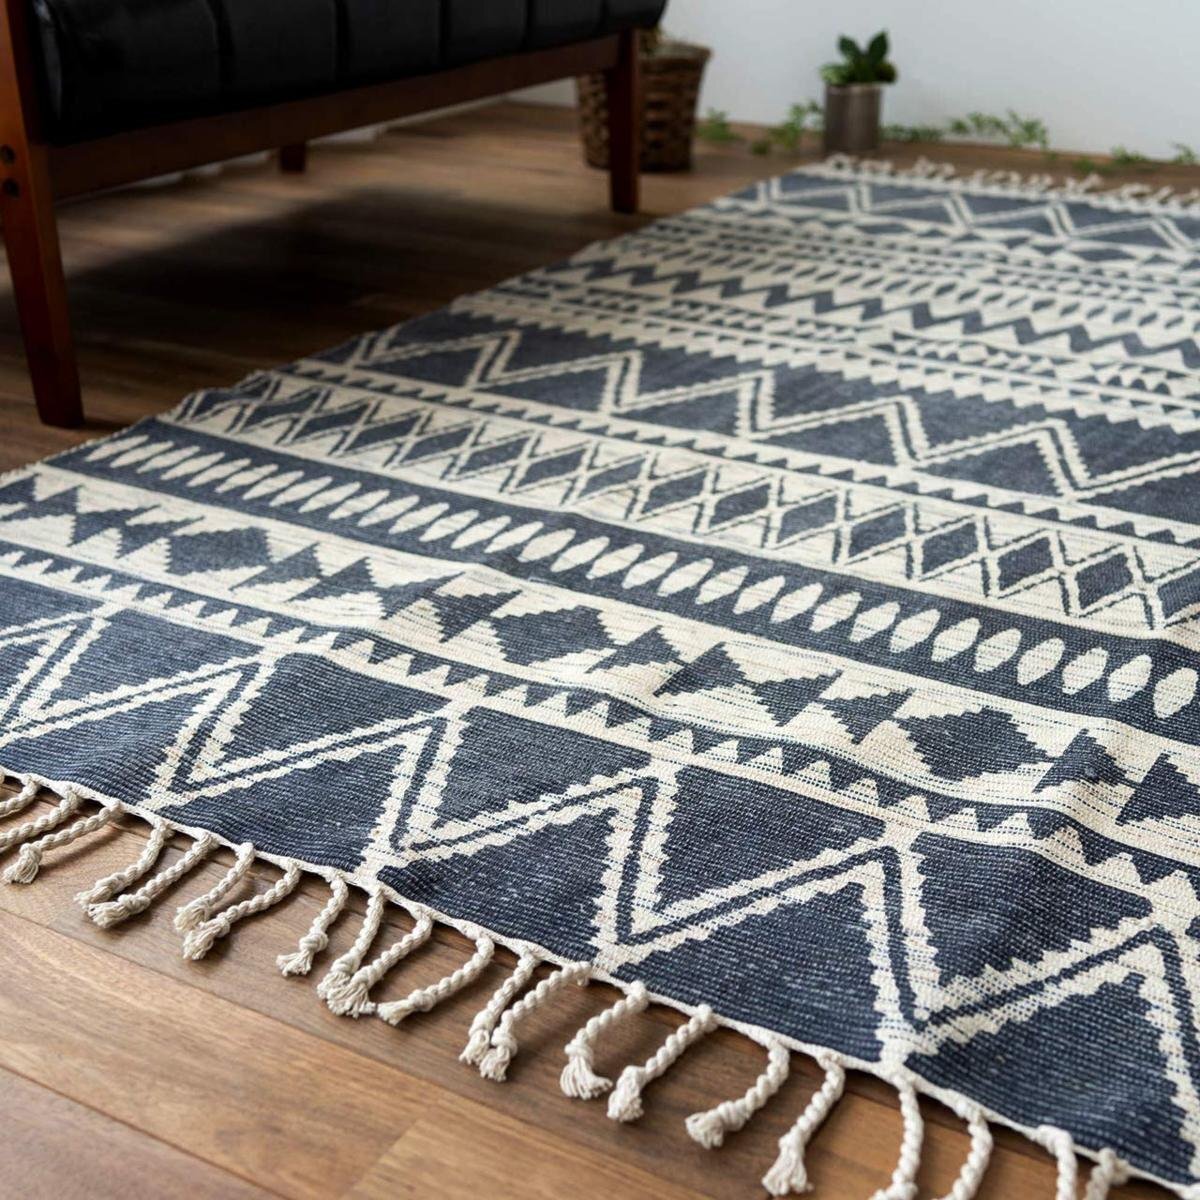 ■■ Sayan Sayan 地毯原生图案手工棉地毯垫约。 100 x 150 厘米 1 榻榻米 海军蓝, 家具, 内部的, 地毯, 小地毯, 垫, 地毯通用